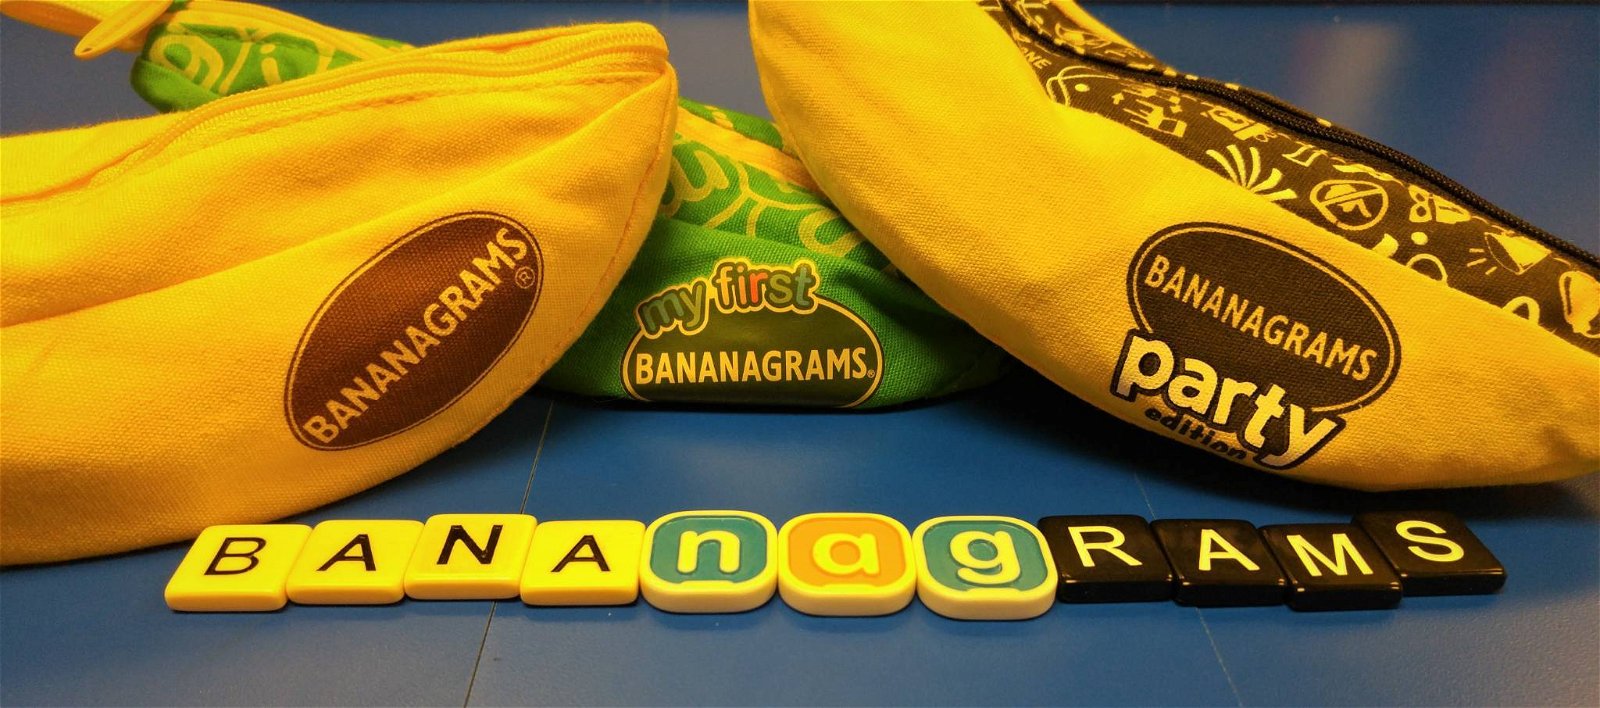 Immagine di Bananagrams School Club: una nuova iniziativa per gli studenti inglesi e americani